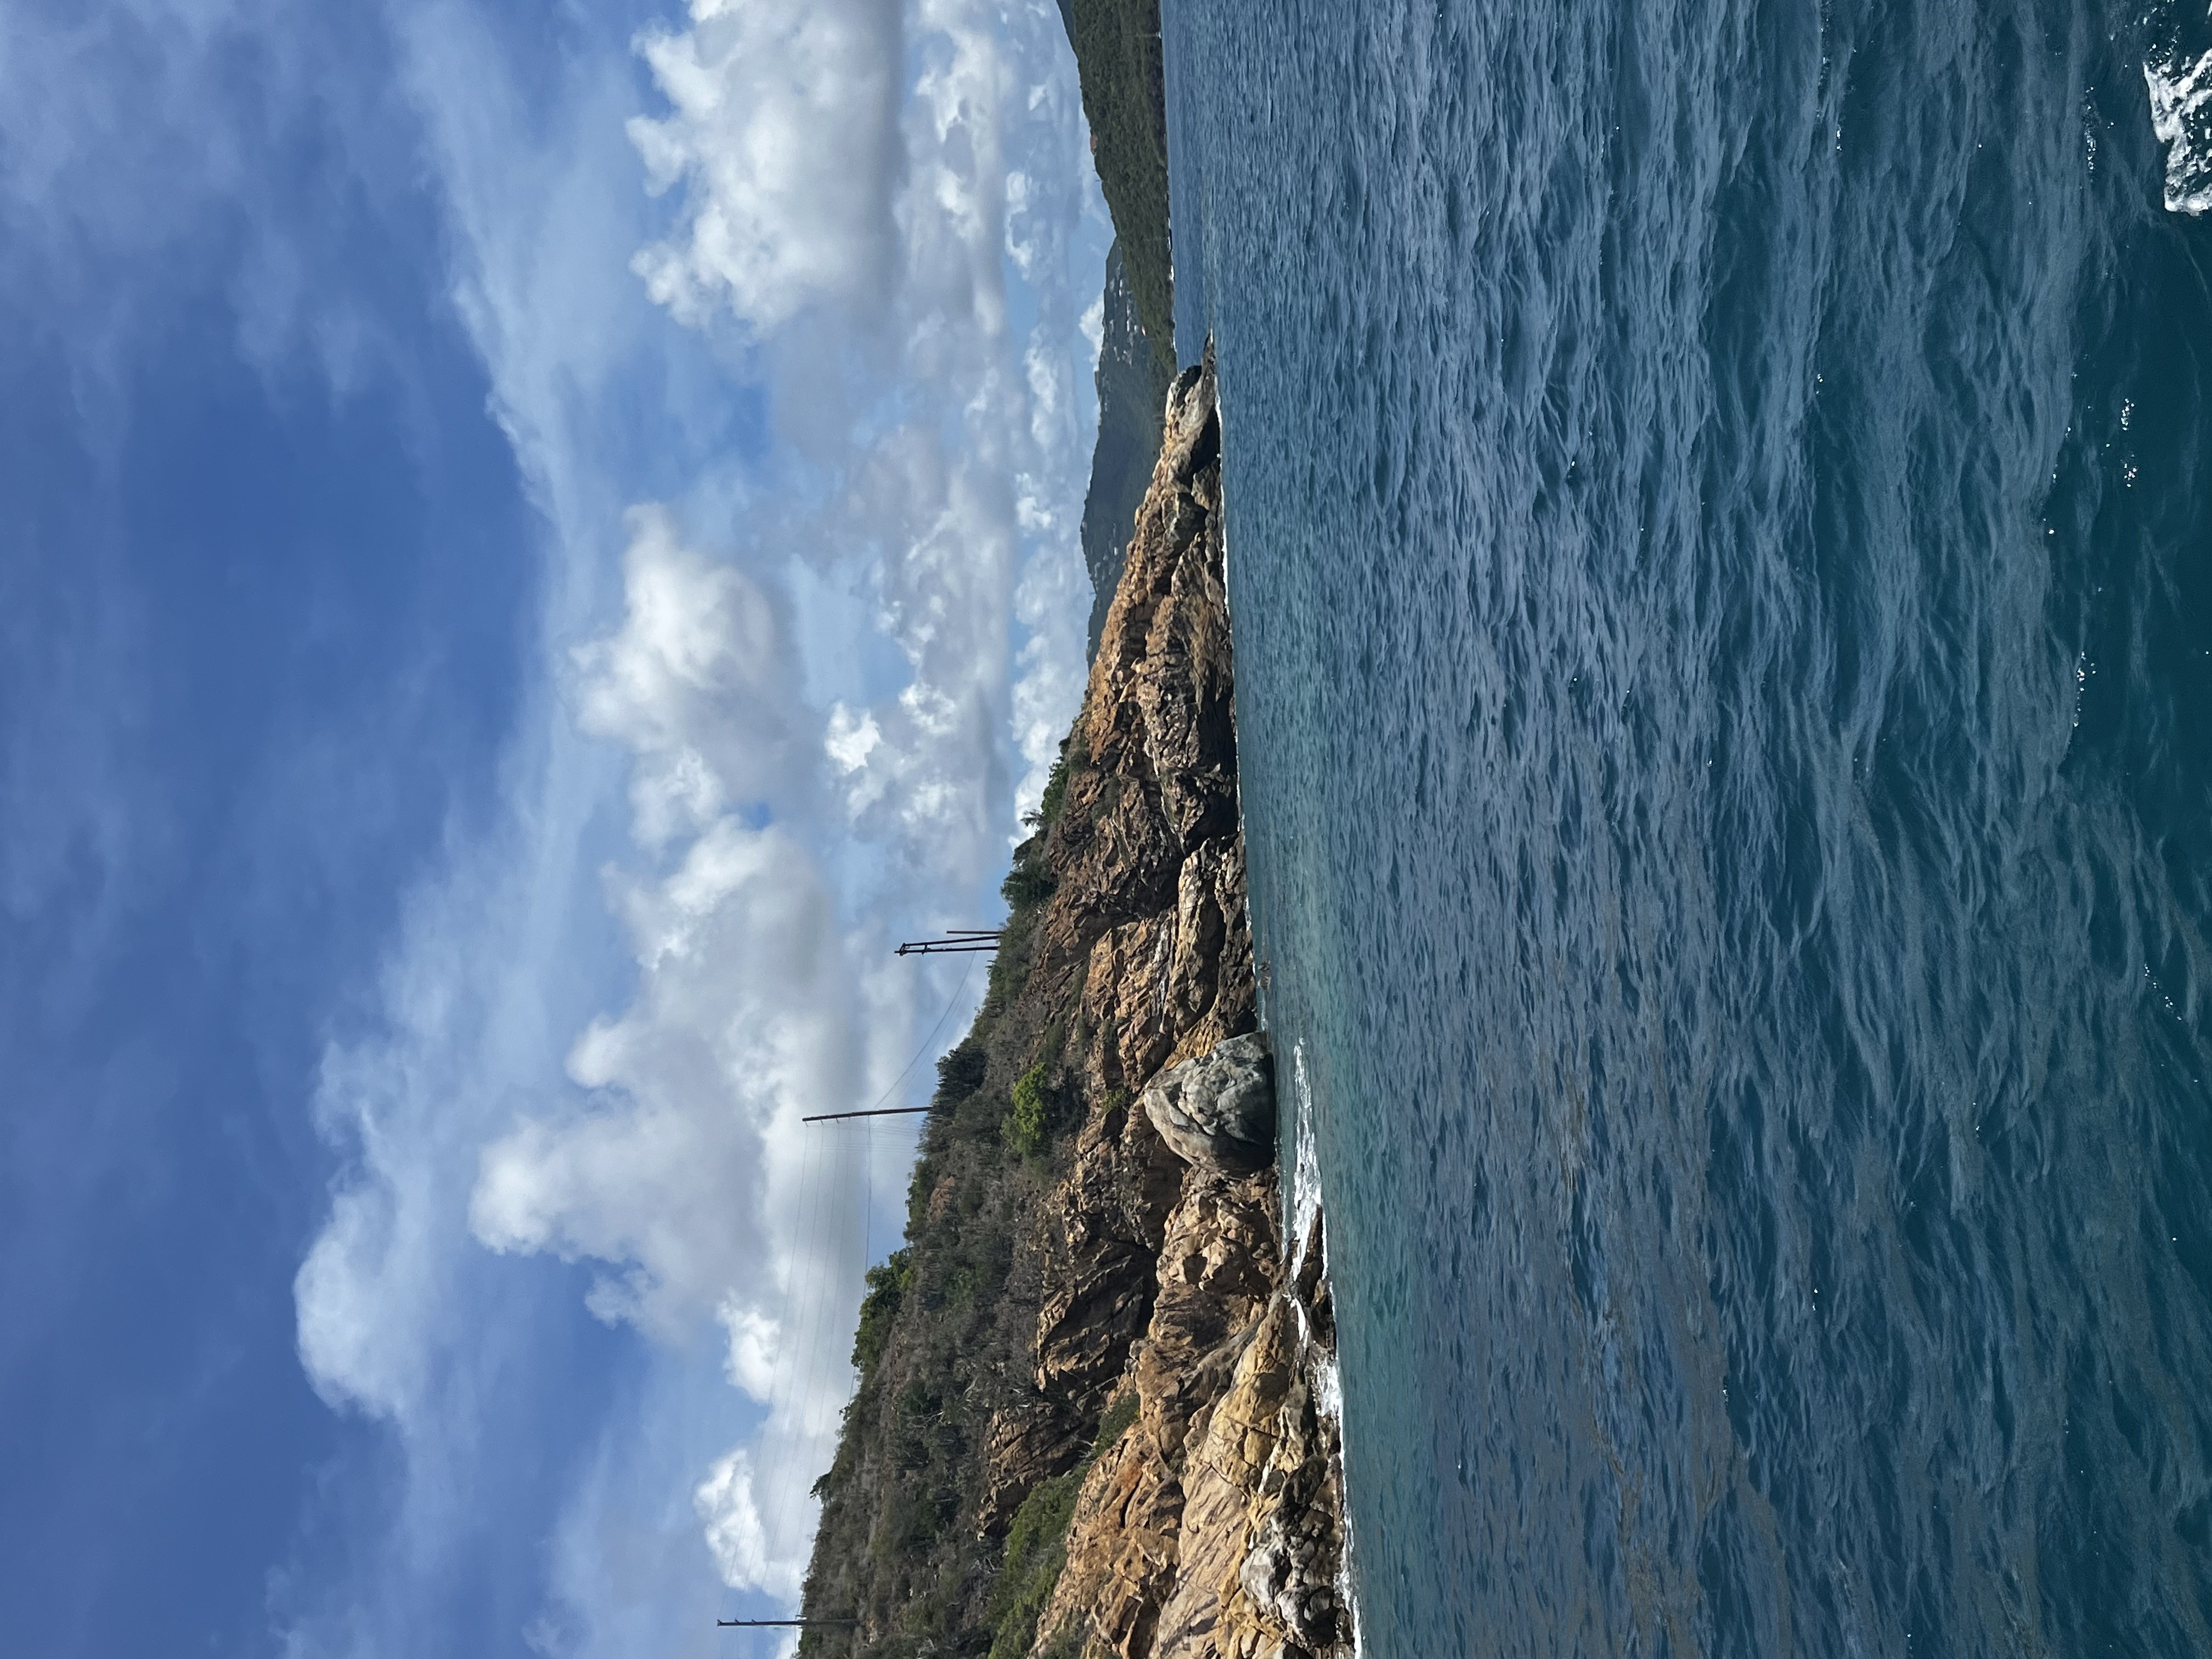 view from the kon tiki boat tour